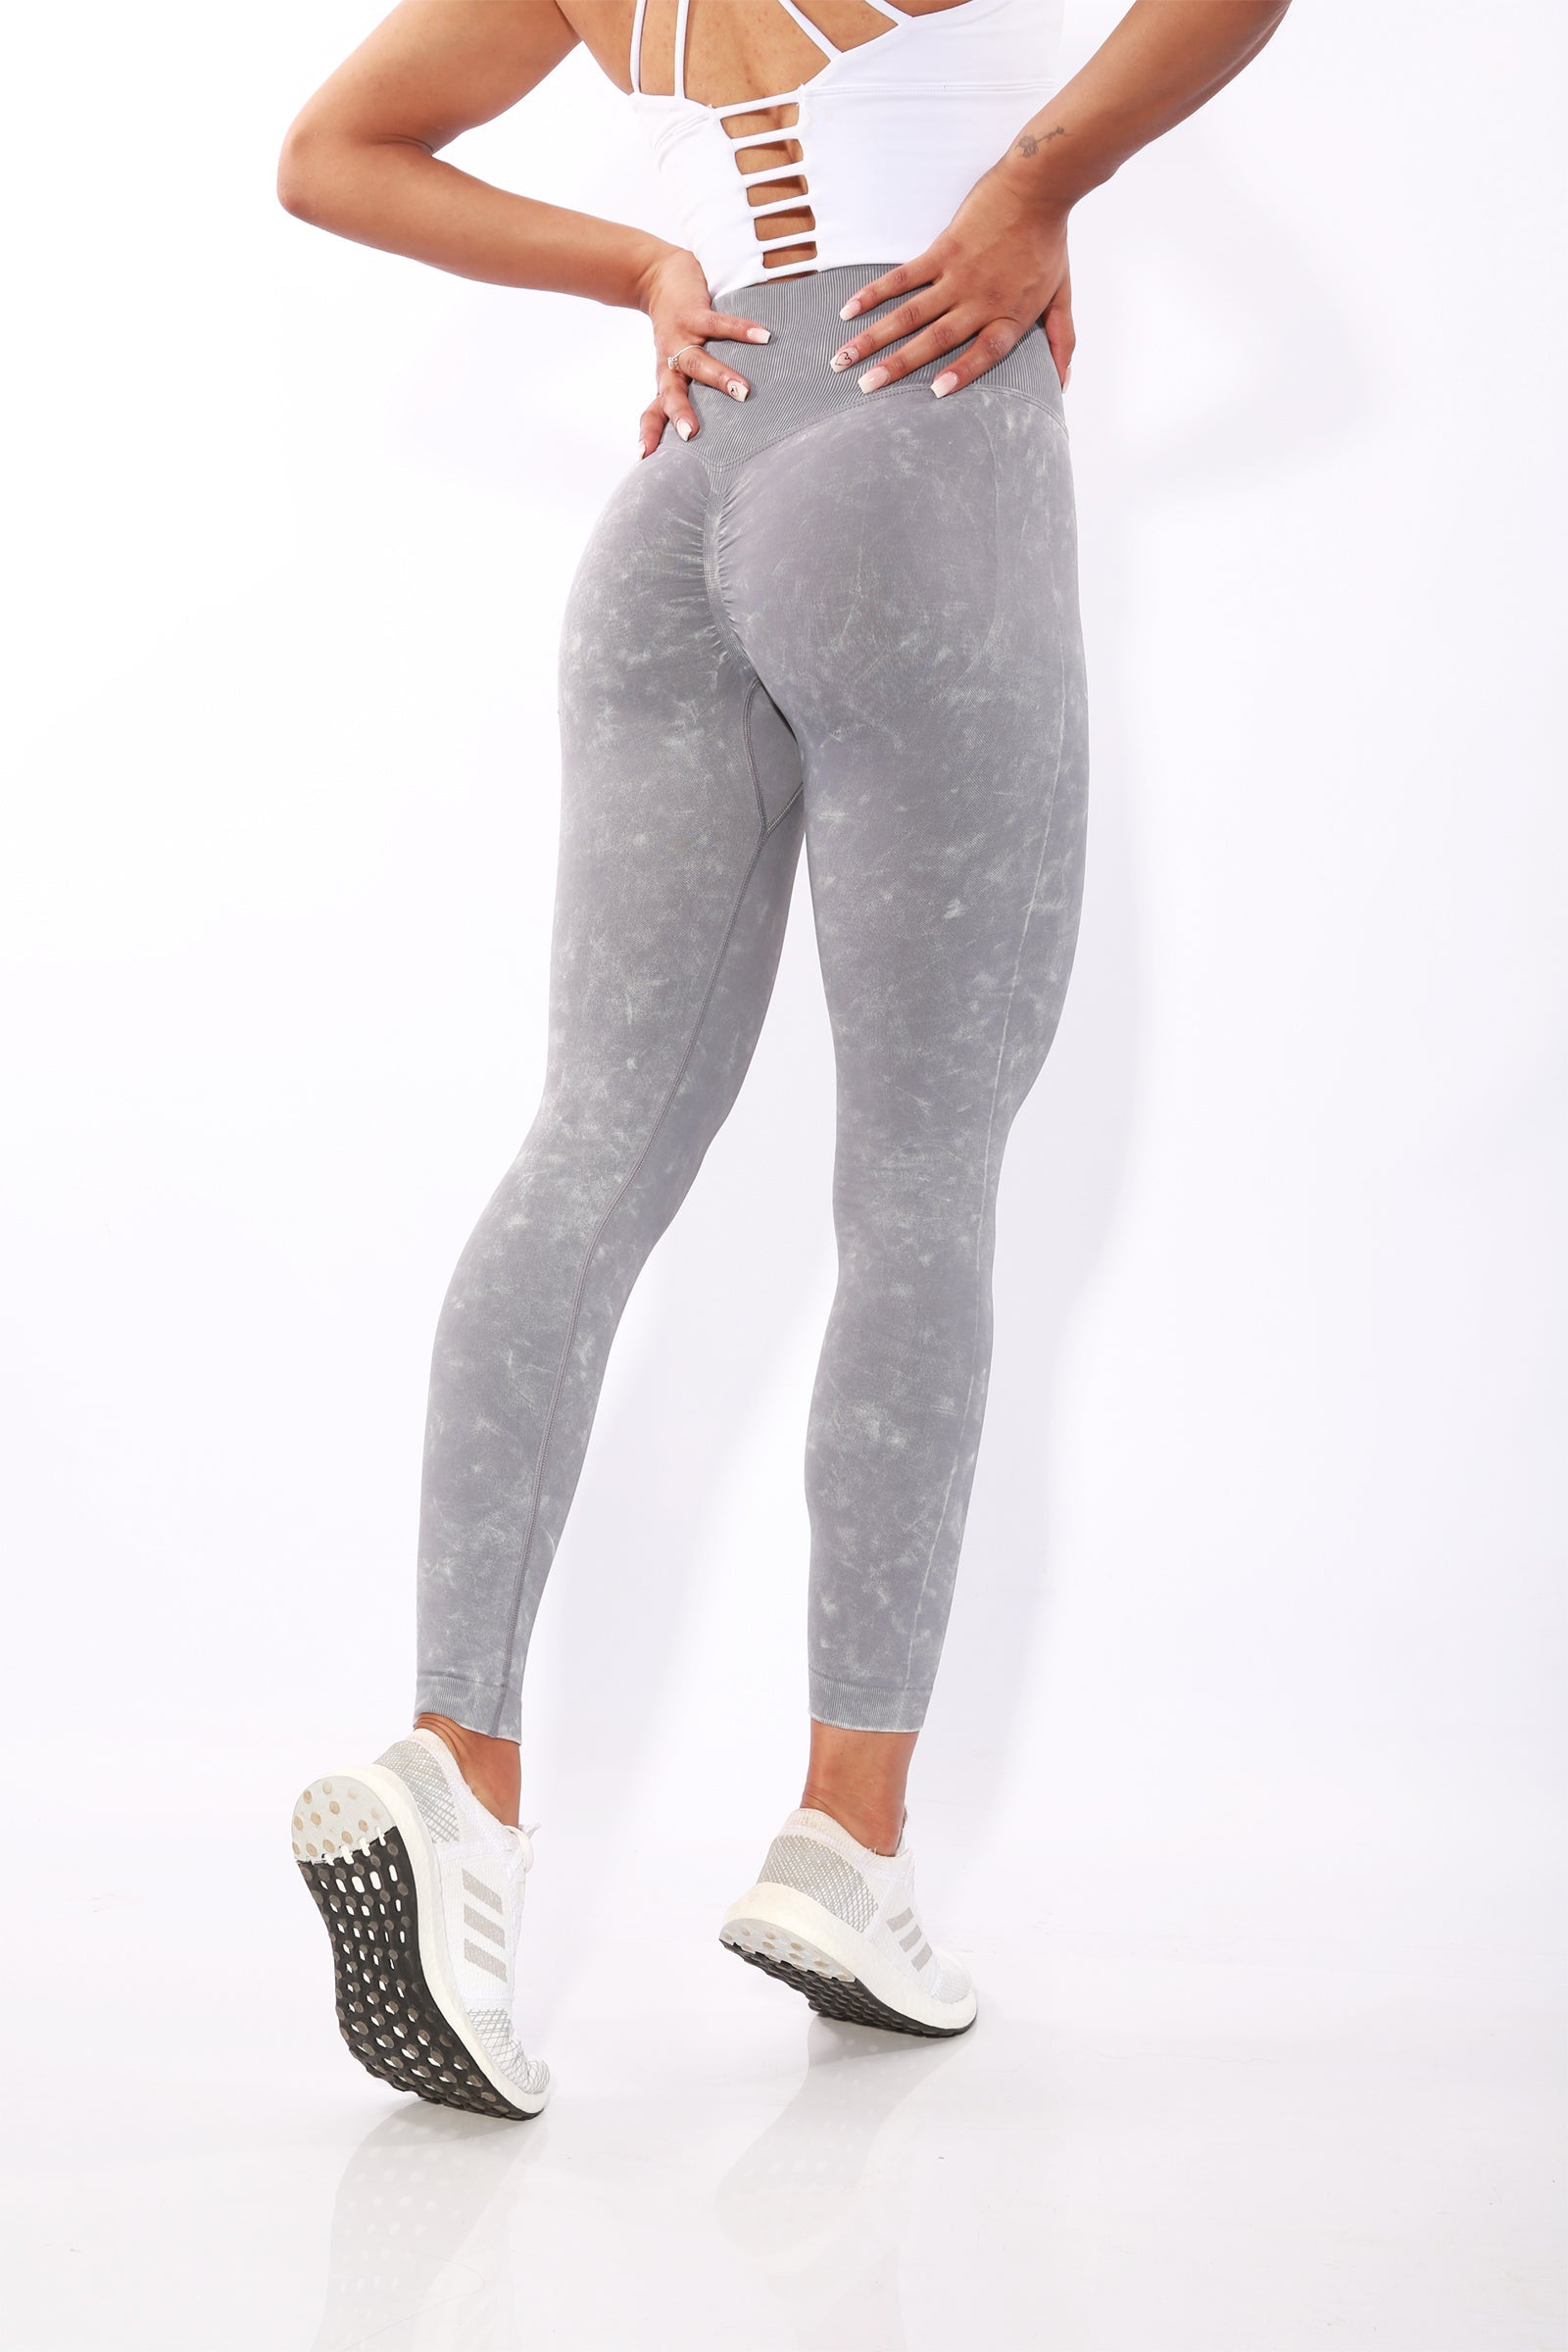 Image of Gym Bunny Summer Scrunch leggings -Grey wash